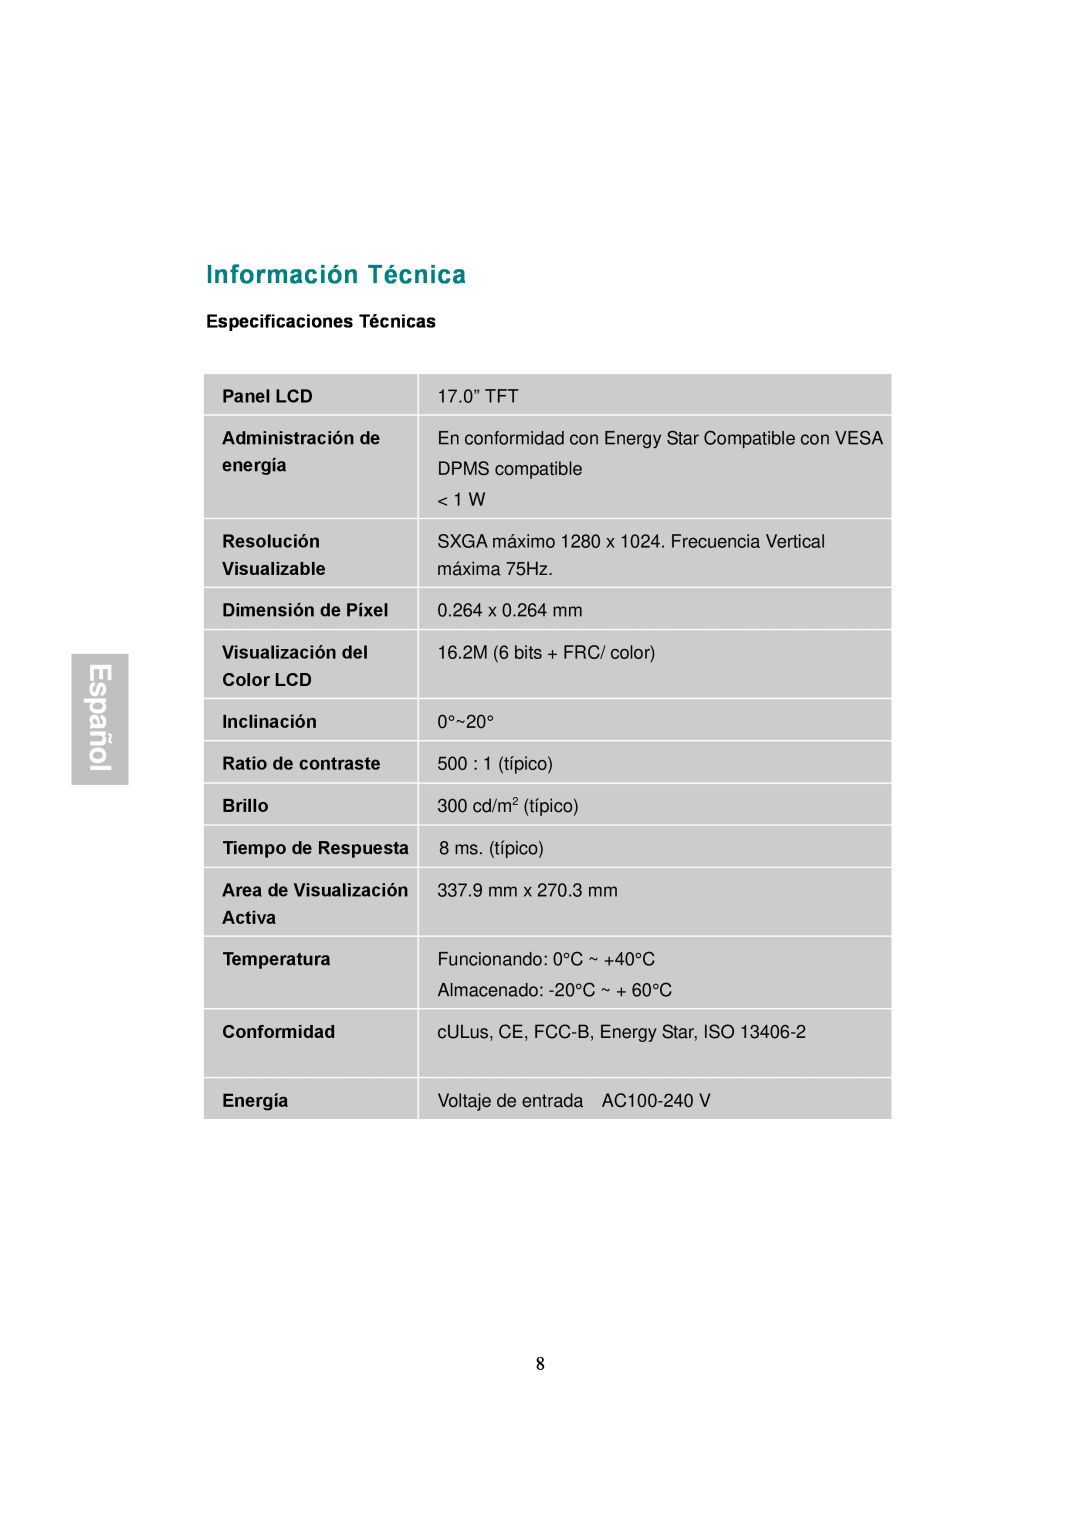 AOC 177S manual Información Técnica 